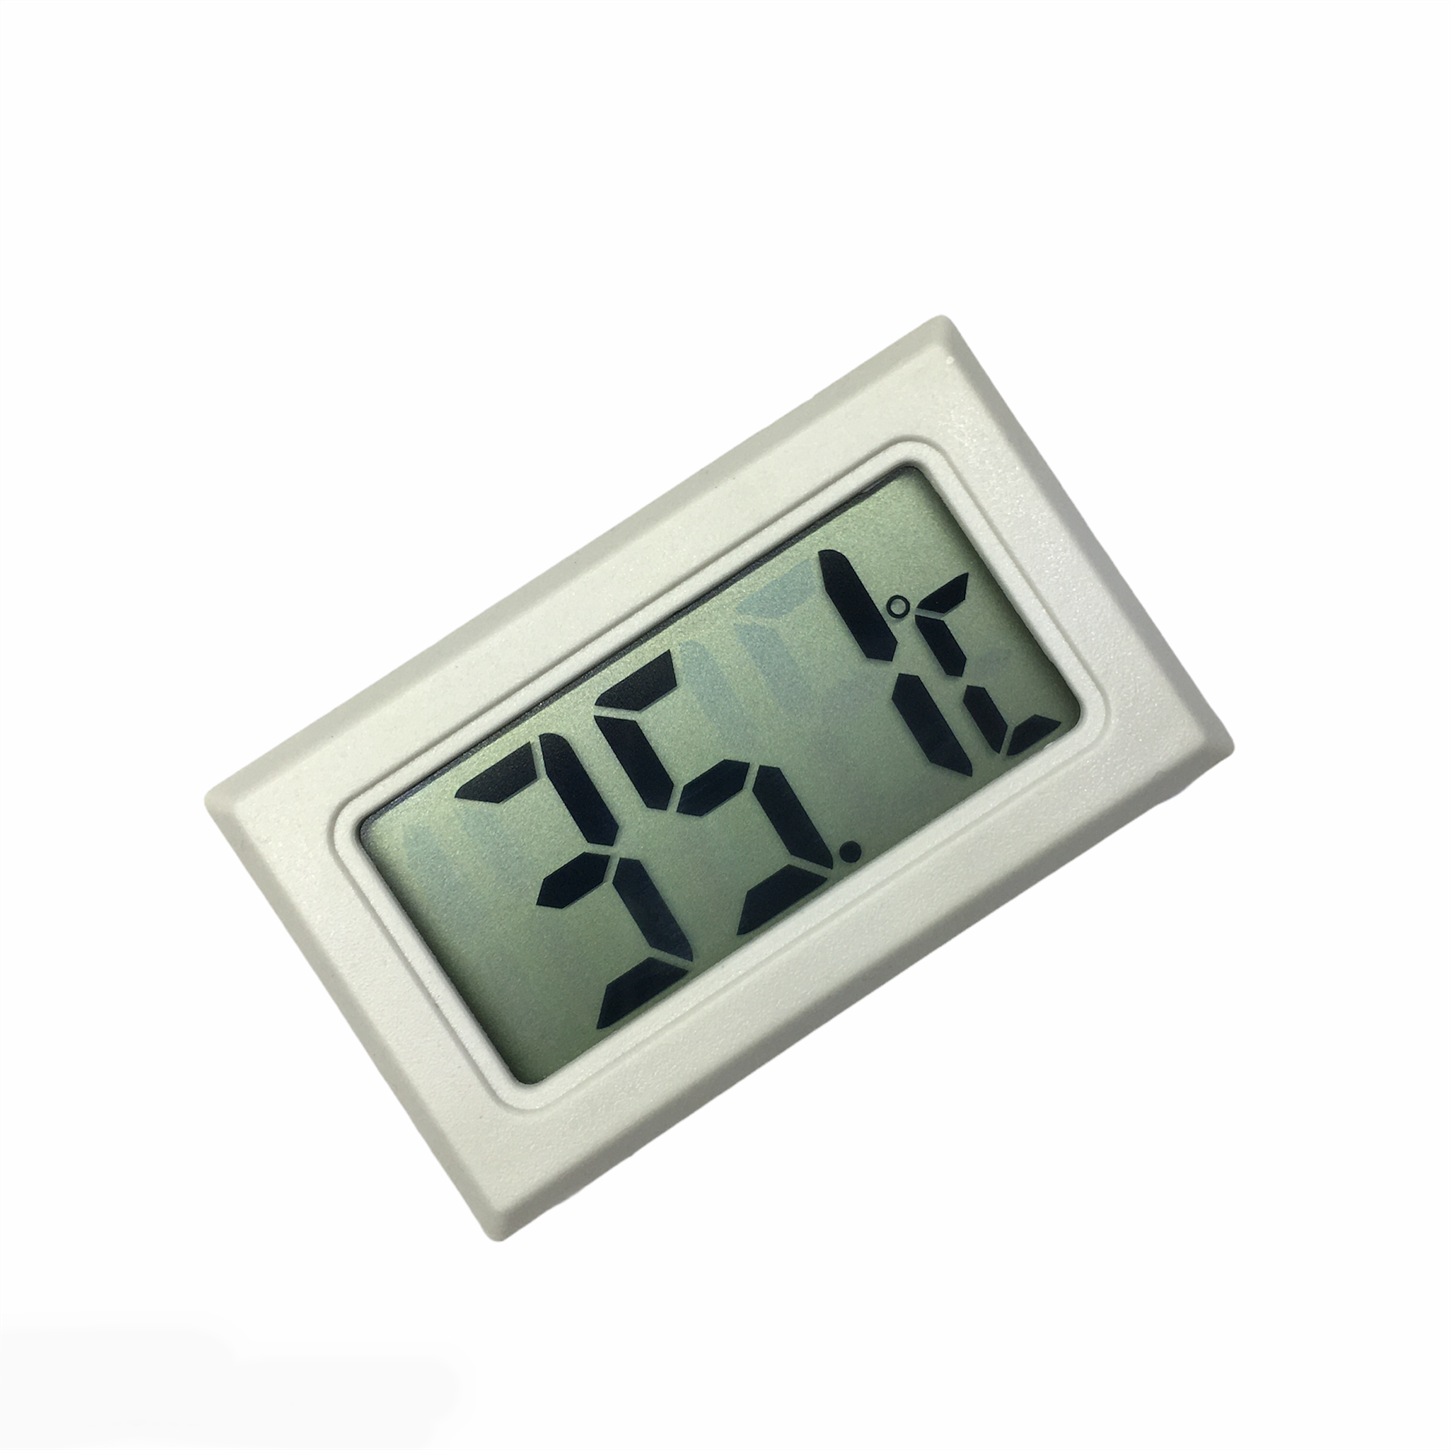 Digital thermometer แบบไม่มีสาย ดิจิตอลเทอร์โมมิเตอร์ ตัววัดอุณหภูมิ เครื่องวัดอุณหภูมิ อุปกรณ์วัดอุณหภูมิ (พร้อมส่ง)